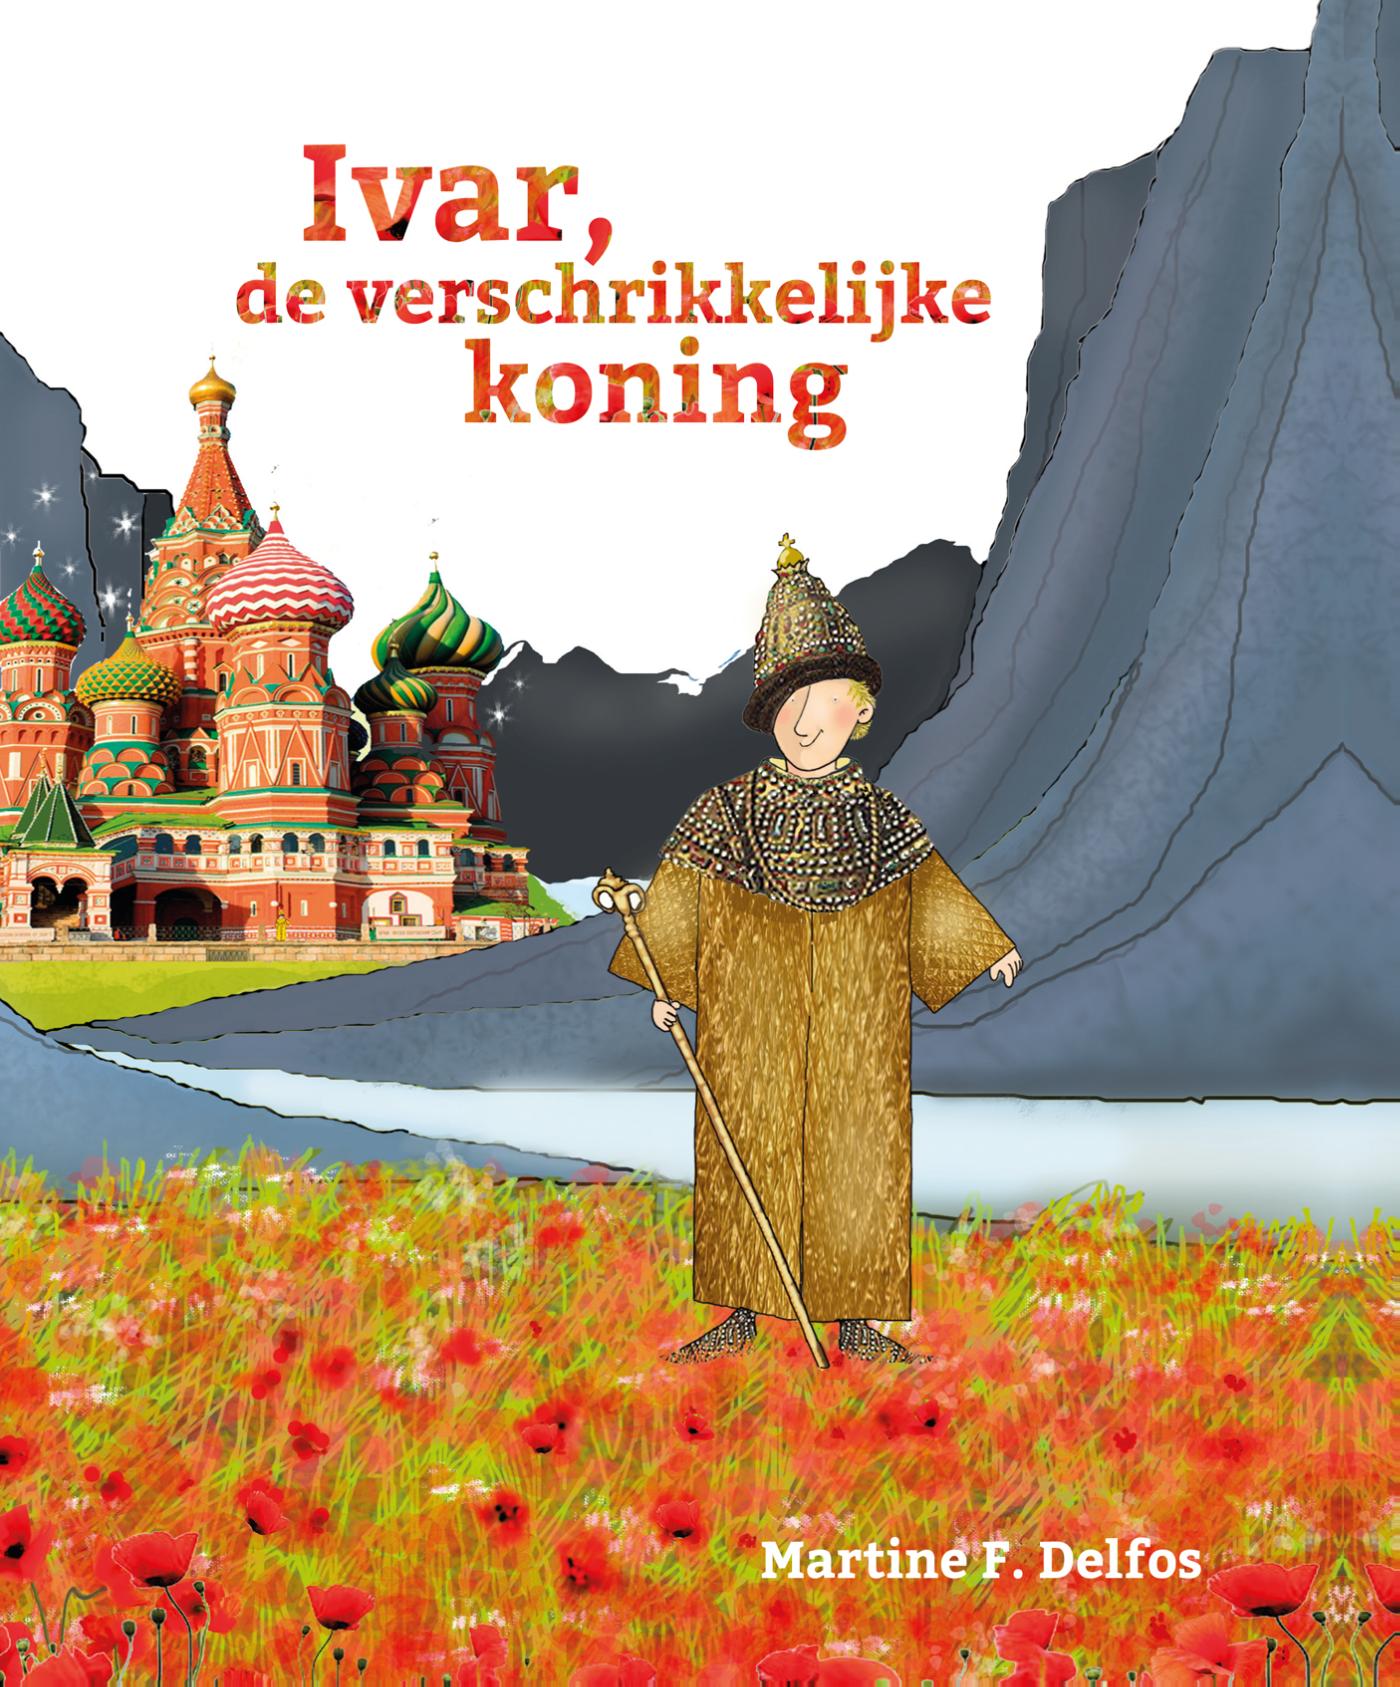 Ivar, de verschrikkelijke koning (Ebook)